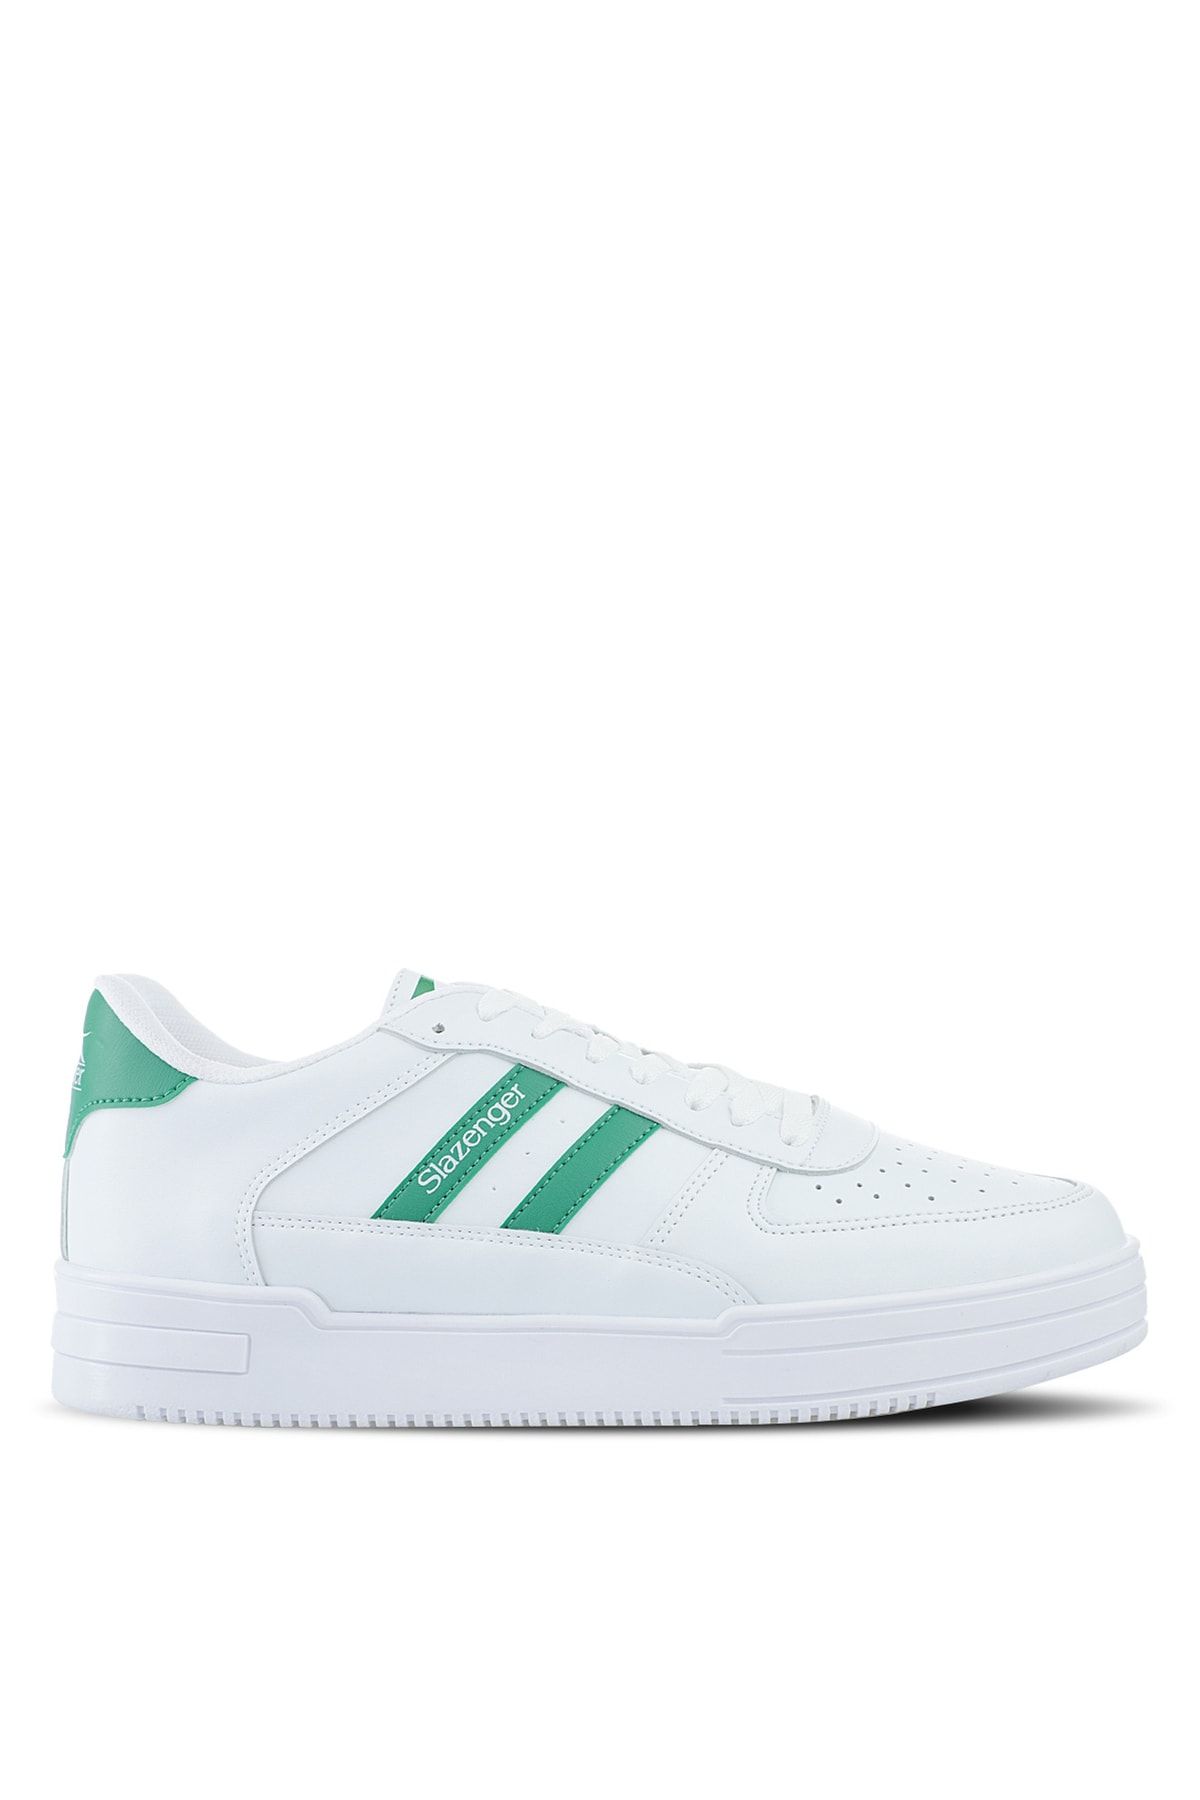 Slazenger Beyaz - Yeşil Kadın Lifestyle Ayakkabı Sa22lk060-008